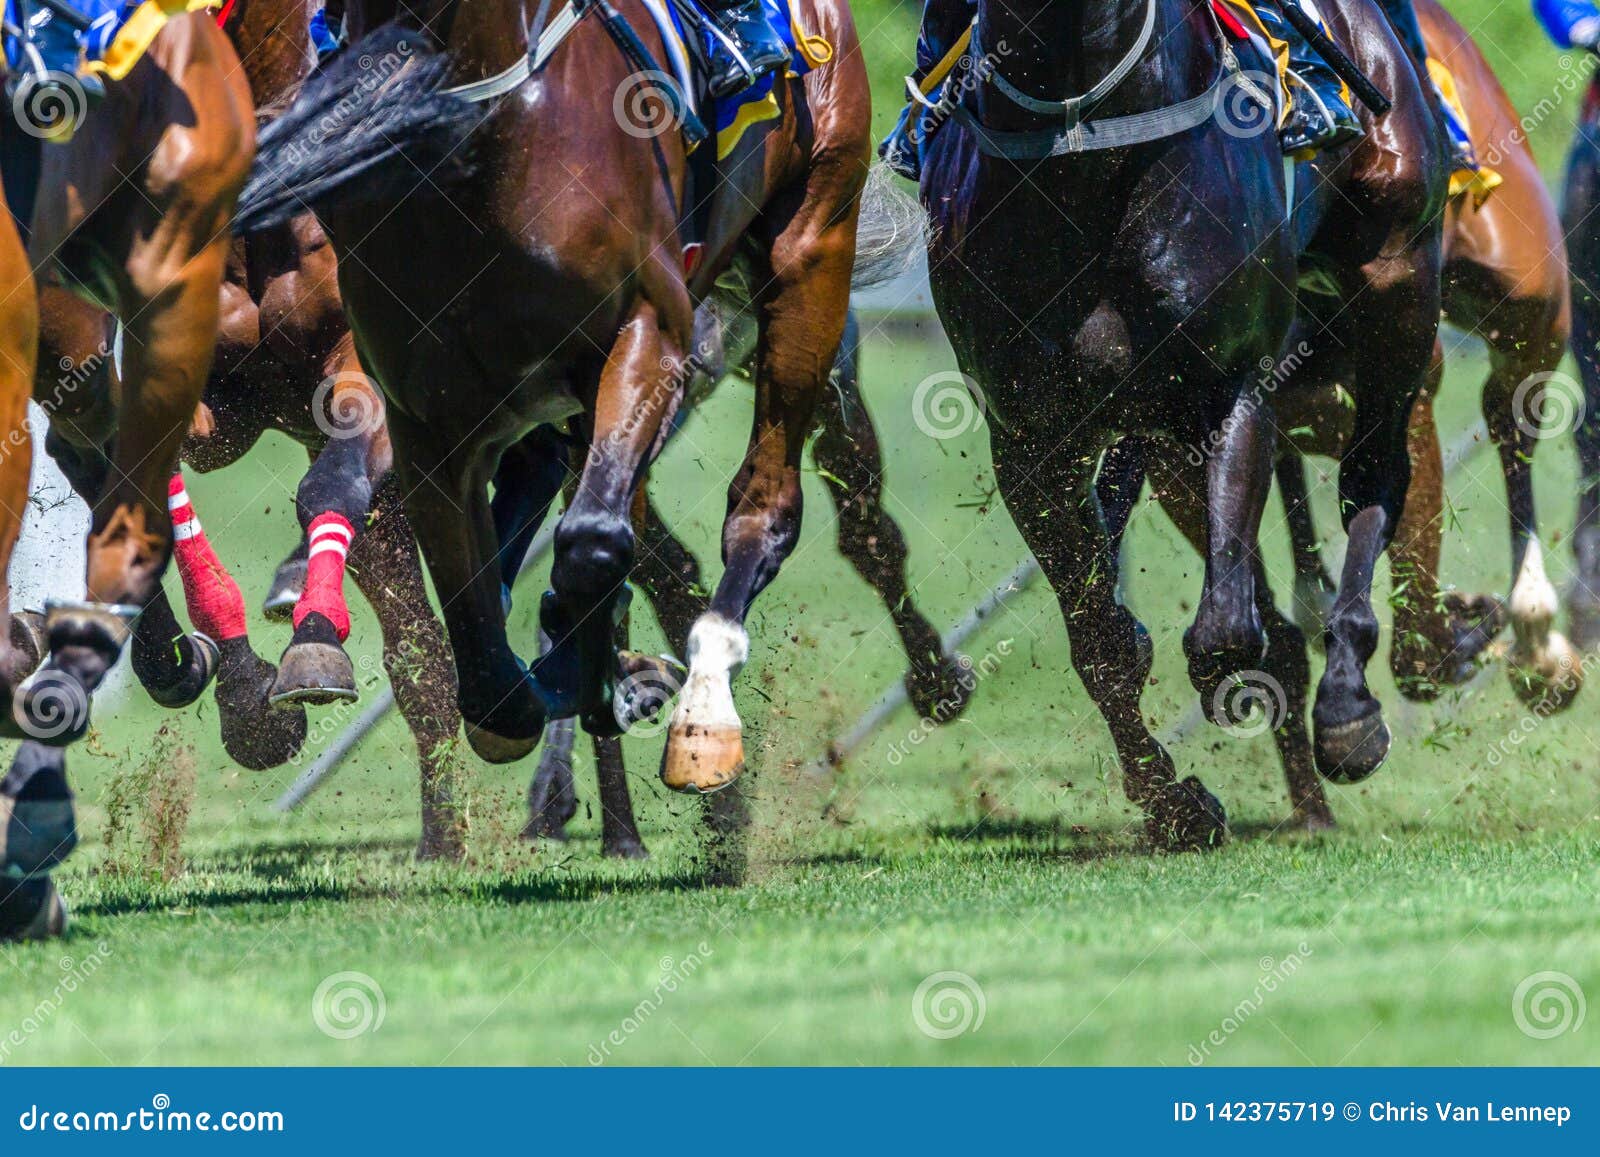 horse racing close-up hoofs legs grass